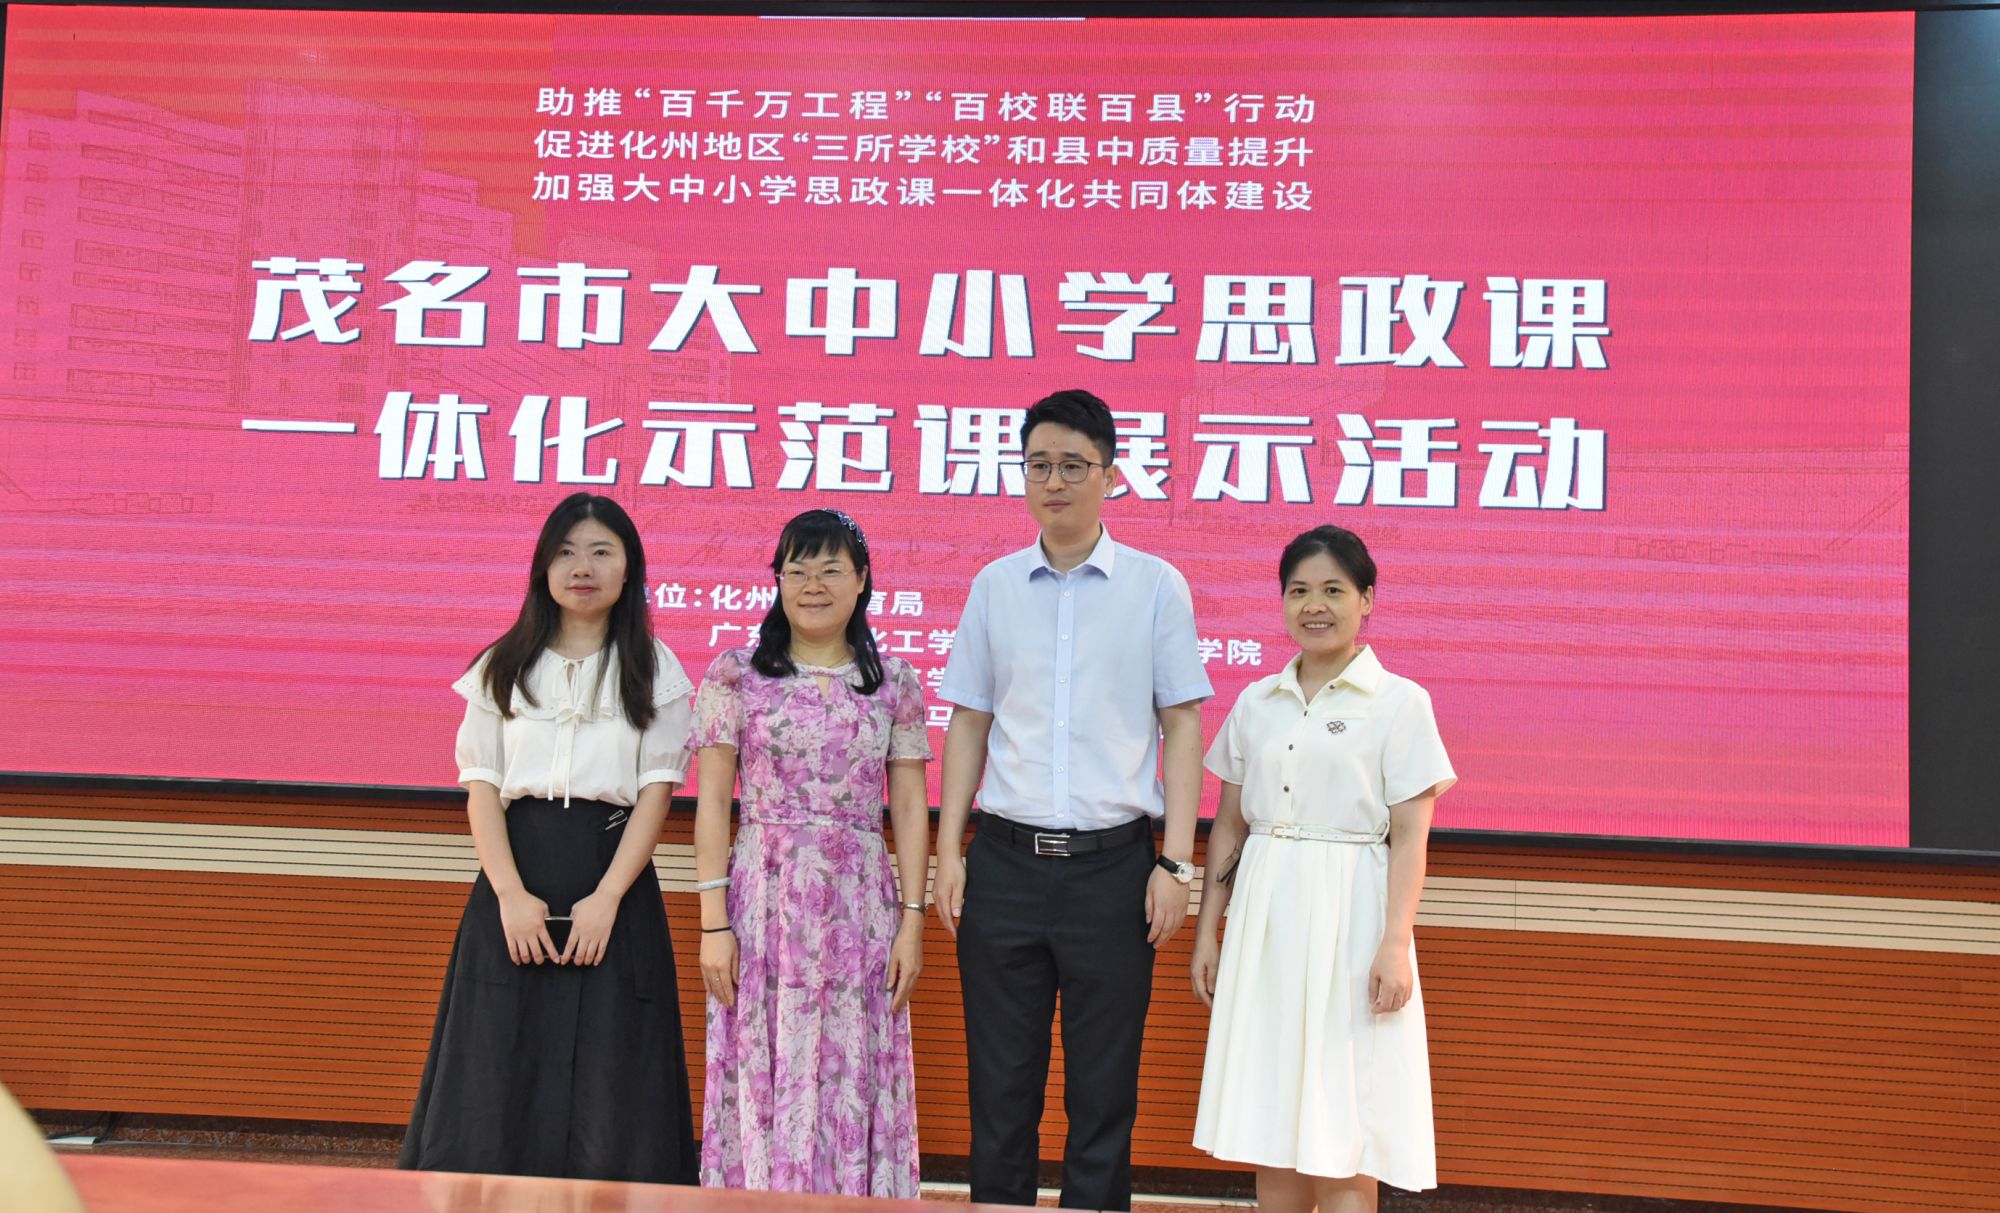 广州医科大学马克思主义学院,茂名市教育局和化州市教育局共同举办